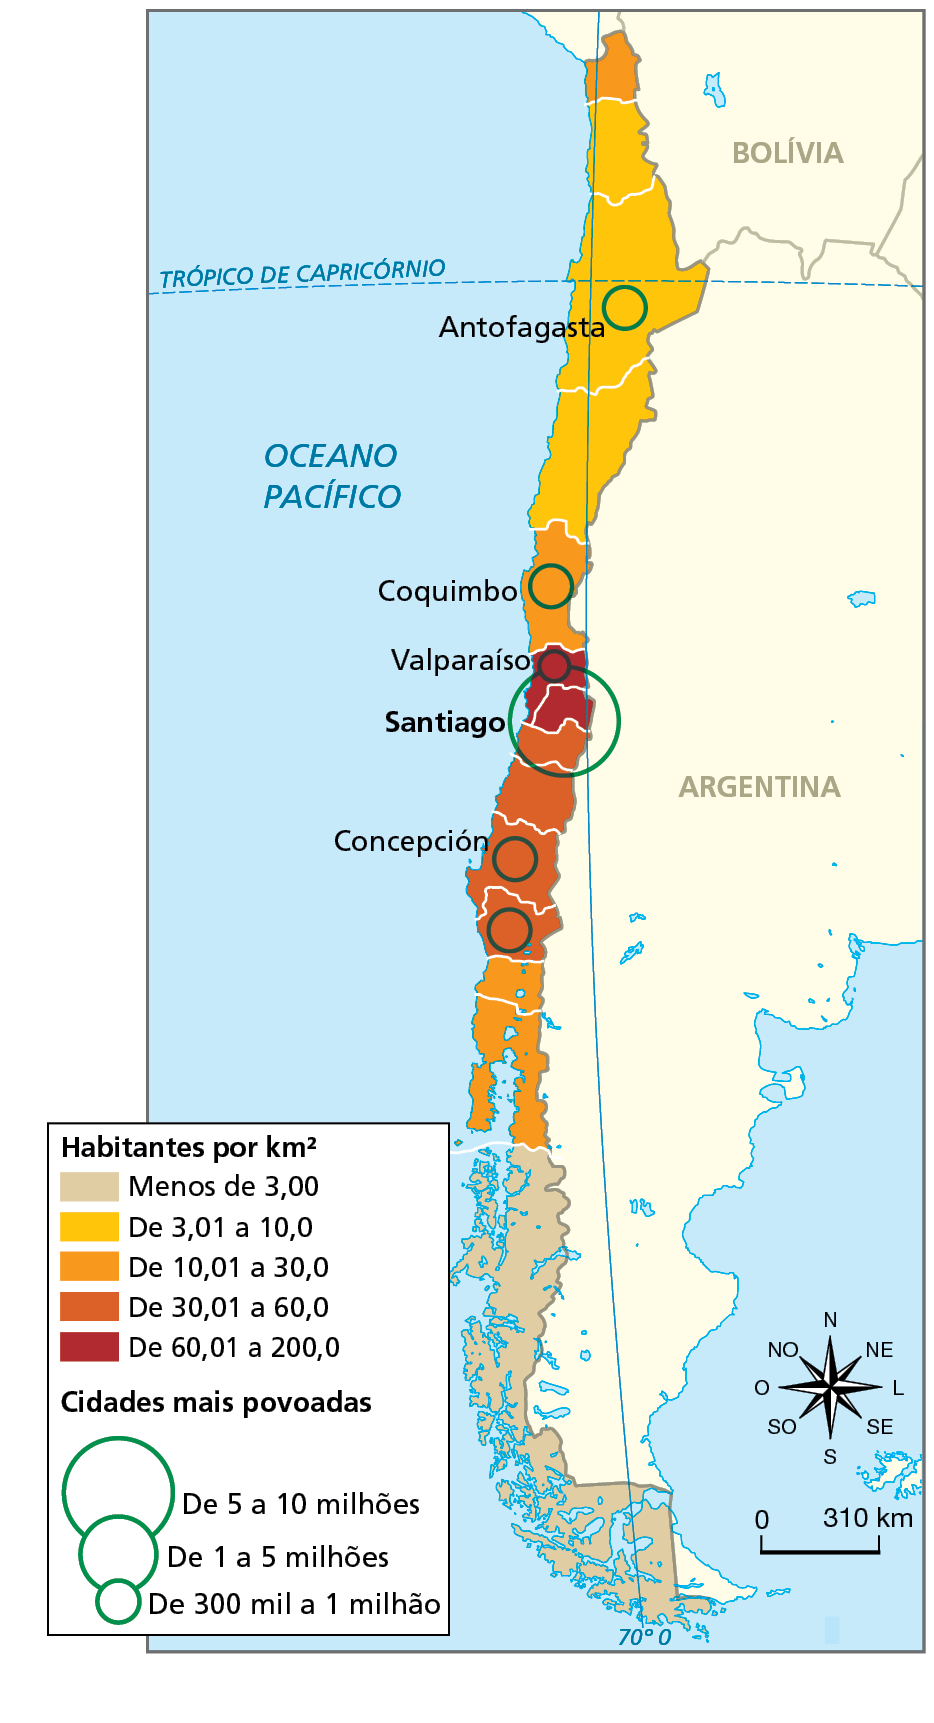 Mapa. Chile: densidade demográfica, 2020. Mapa do sul da América do Sul com destaque para o Chile, representando a sua densidade demográfica em habitantes por quilômetro quadrado e as cidades mais povoadas em milhões de habitantes.  Menos de 3,00 habitantes por quilômetro quadrado: porção no extremo sul do país.   De 3,01 a 10,0 habitantes por quilômetro quadrado: porção ao norte, em parte da fronteira do Chile com a Bolívia e a Argentina. Abrange a cidade de Antofagasta, que possui de 300.000 a 1 milhão de habitantes.  De 10,01 a 30,0 habitantes por quilômetro quadrado: pequena área no extremo norte, na fronteira com a Bolívia e o Peru, área na porção central do território, onde está a cidade de Coquimbo, com 300.000 a 1 milhão de habitantes e porção no sul do país.  De 30,01 a 60,0 habitantes por quilômetro quadrado: porção central do país, onde está a cidade de Concepción, com 300.000 a 1 milhão de habitantes.   De 60,01 a 200,0 habitantes por quilômetro quadrado: porção no centro do território, onde estão as cidades de Santiago, com 5 a 10 milhões de habitantes, e Valparaíso, com 300.000 a 1 milhão de habitantes.  À direita, rosa dos ventos e escala de 0 a 310 quilômetros.